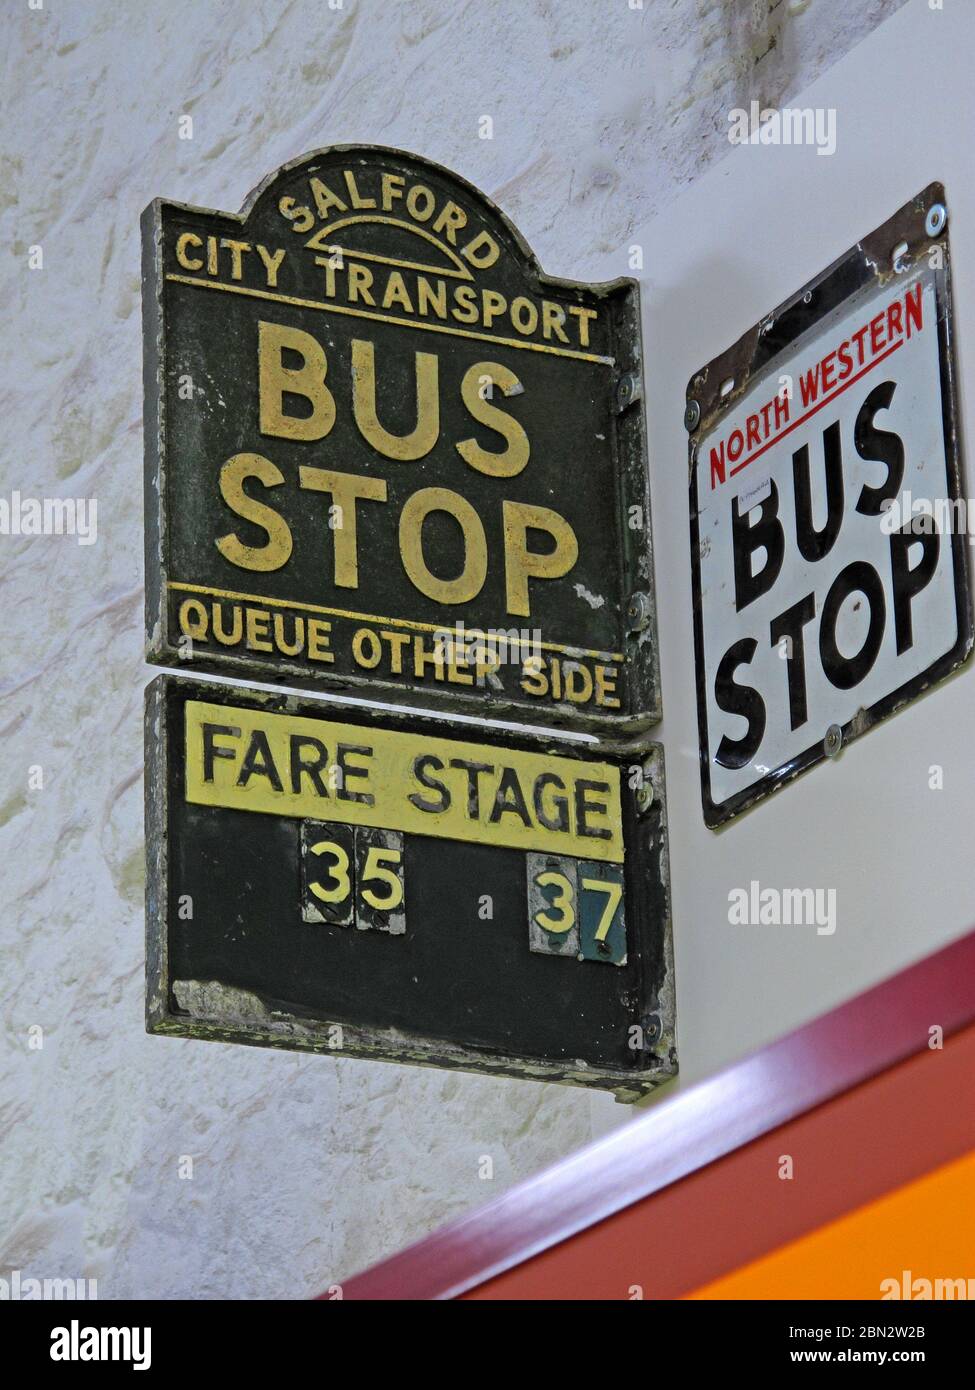 Trasporto di Salford City, fermata dell'autobus, coda altro lato, fare Stage, 35,37, più, Nord Ovest, fermata dell'autobus Foto Stock